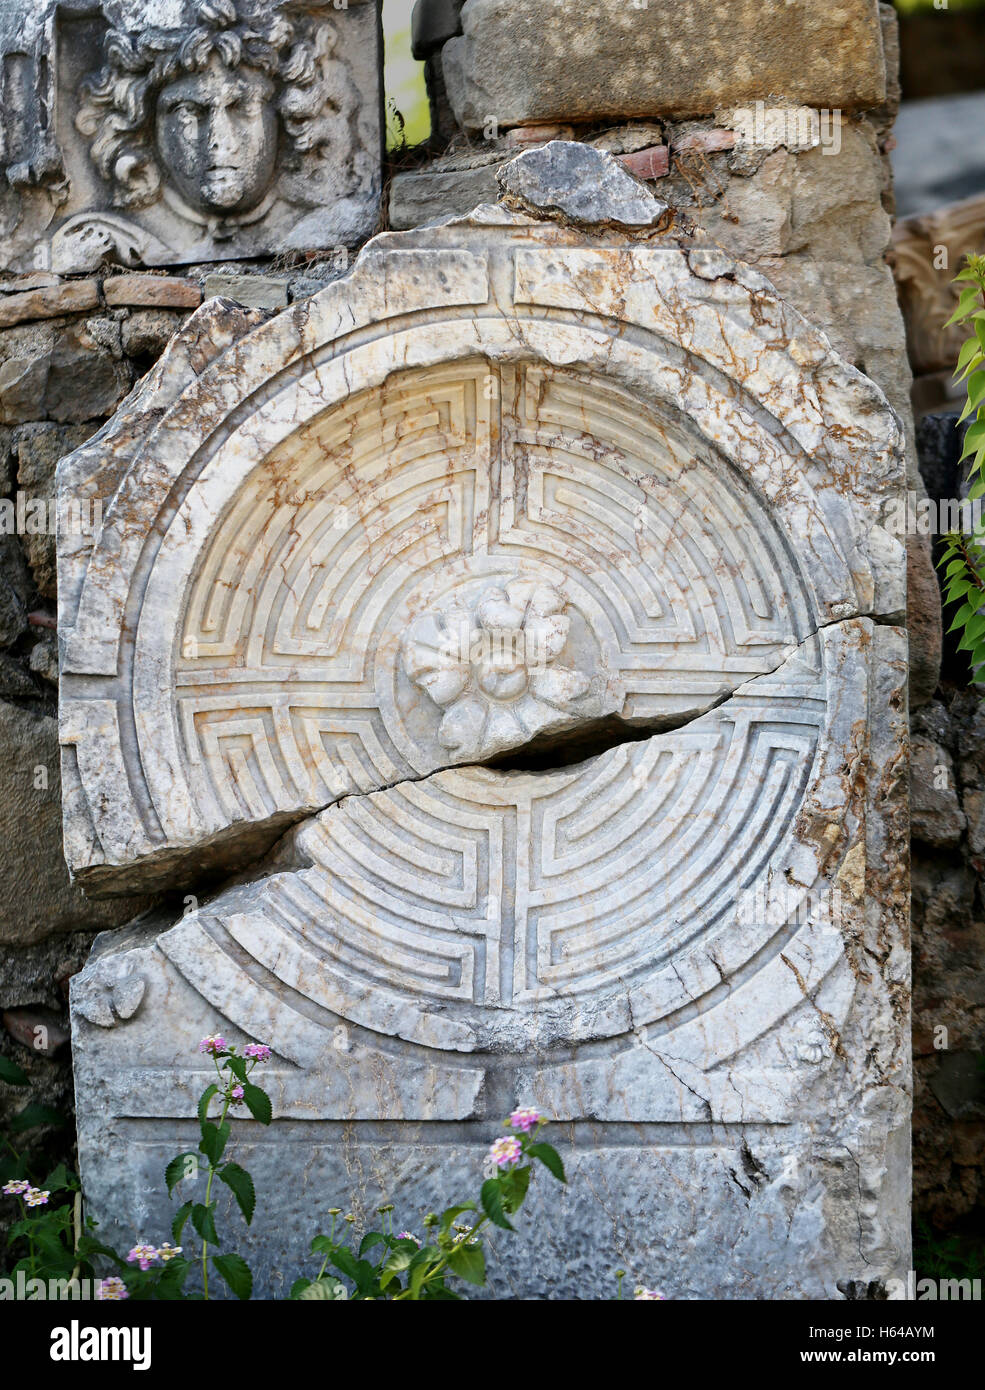 L'architecture ancienne avec un labyrinthe dans un cercle sur la colonne Banque D'Images